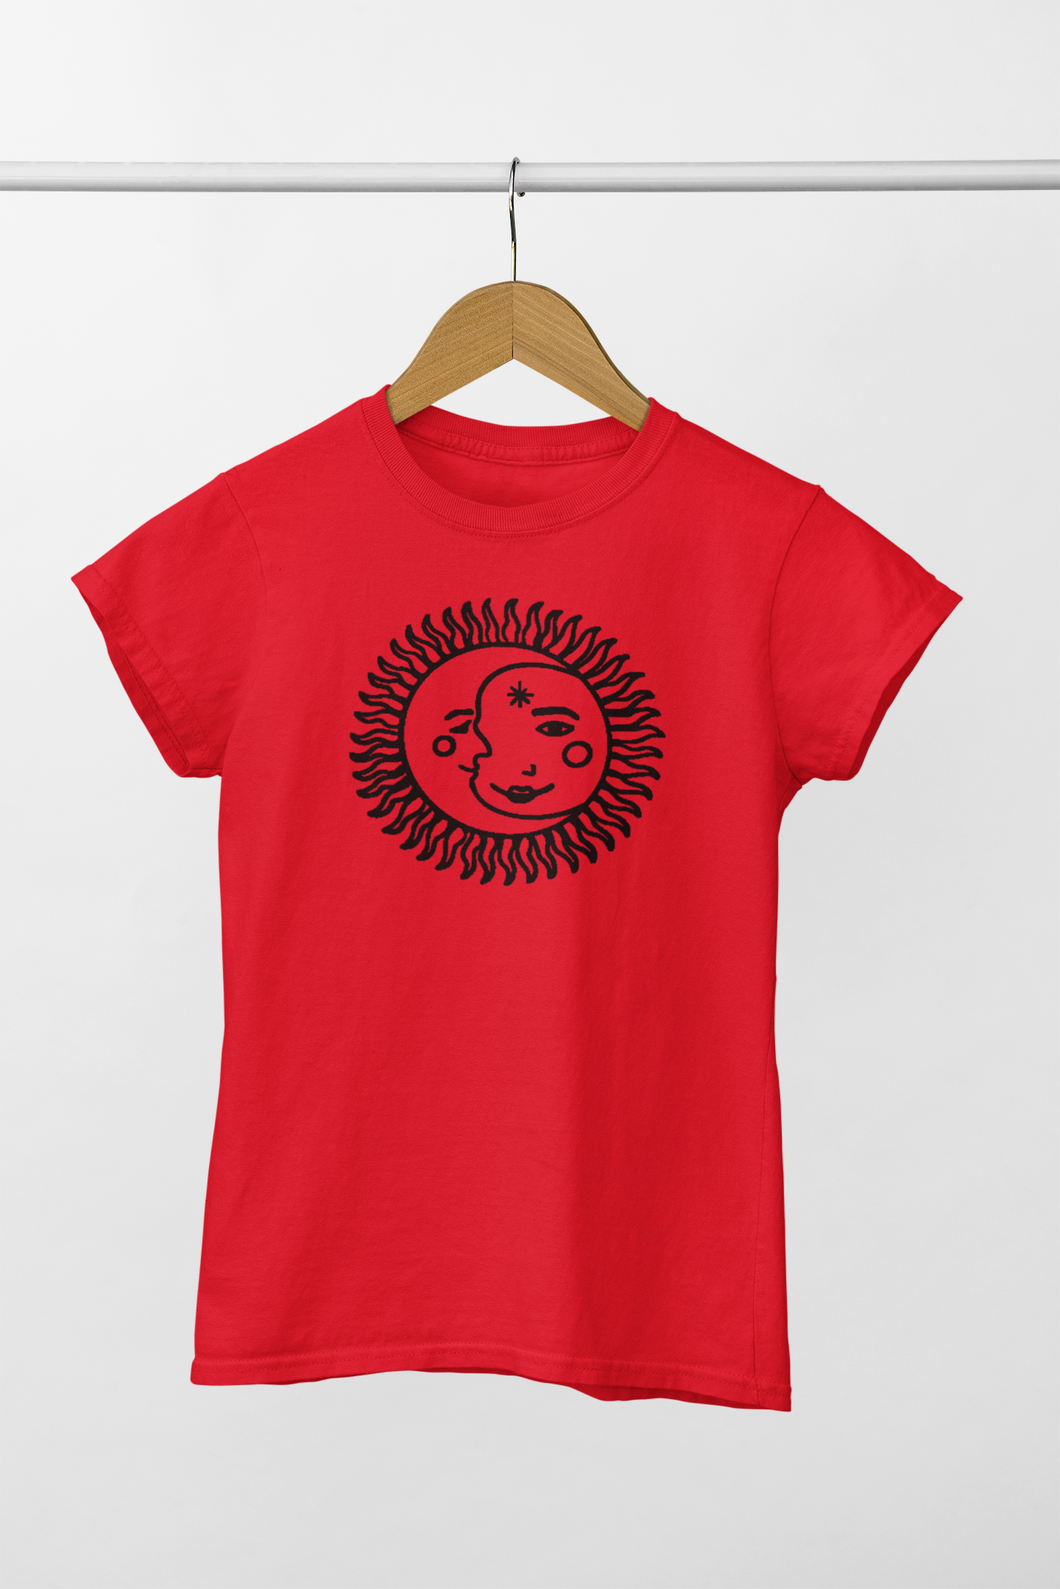 Sunflower t-shirt design (men's t-shirt )